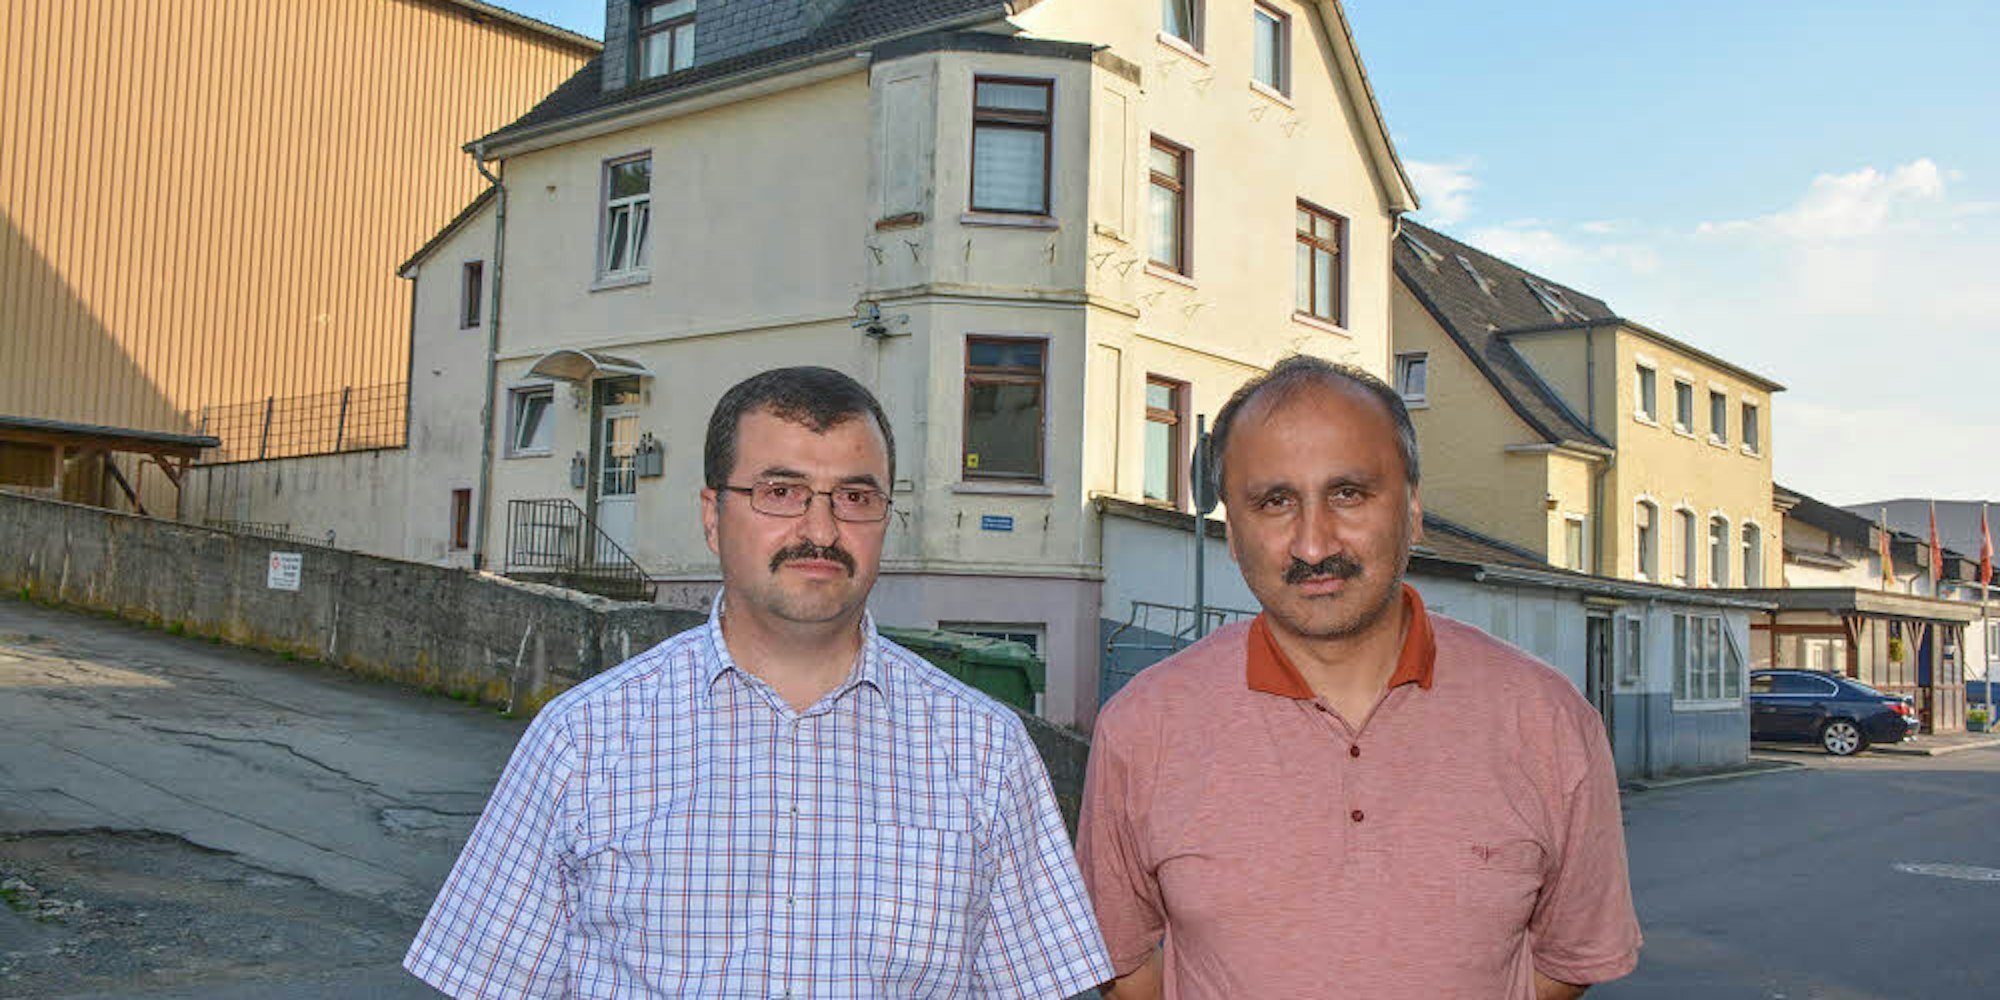 Versuchen weiter, in Bergneustadt eine Moschee zu bauen: Vereinsvorstand Abdullah Ulay (l.) und Vorstandsmitglied Erdogan Caylak, hier 2017 vor dem heutigen Vereinsgelände.